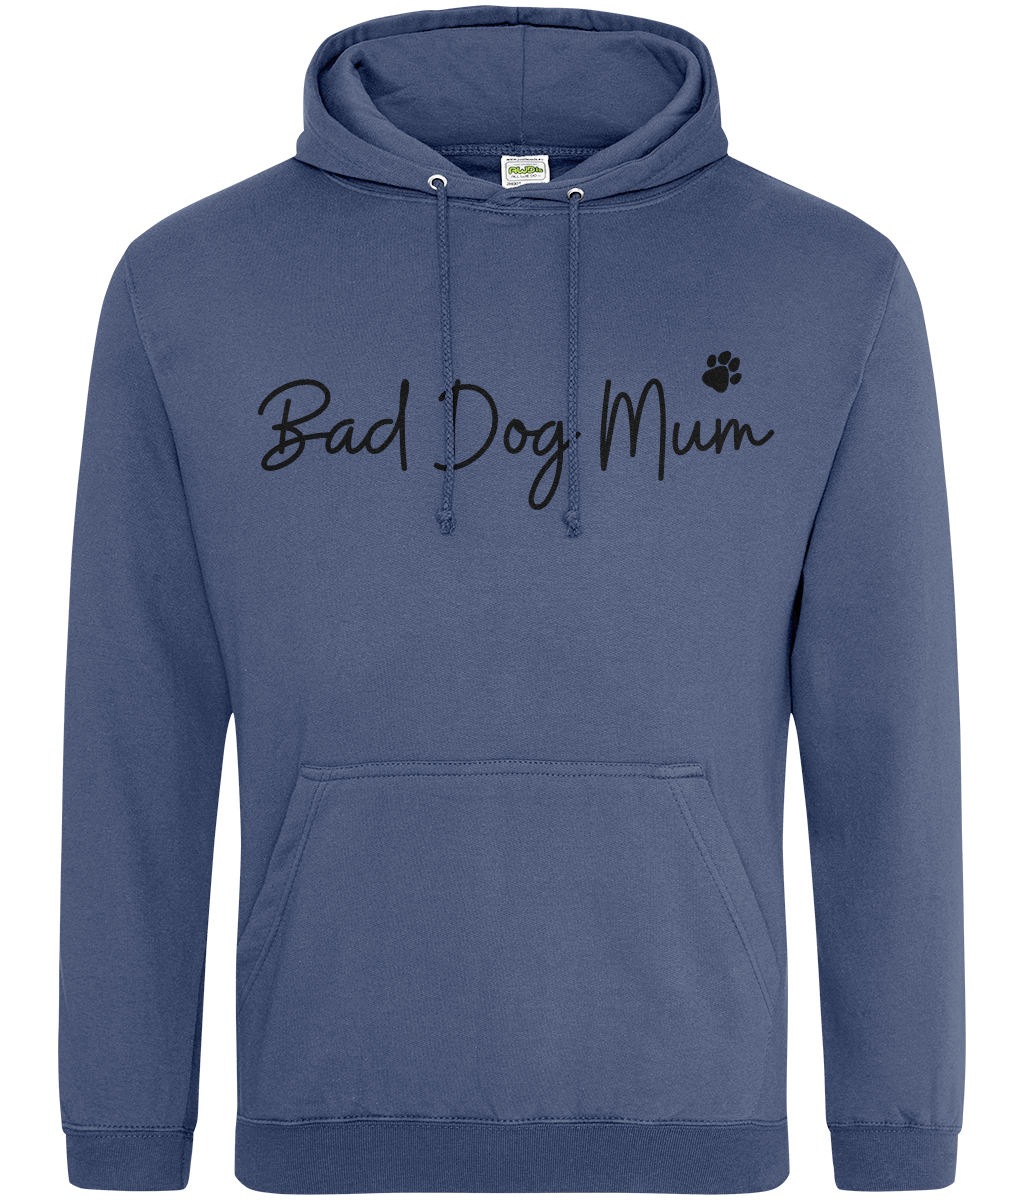 Bad Dog Mum Hoodie